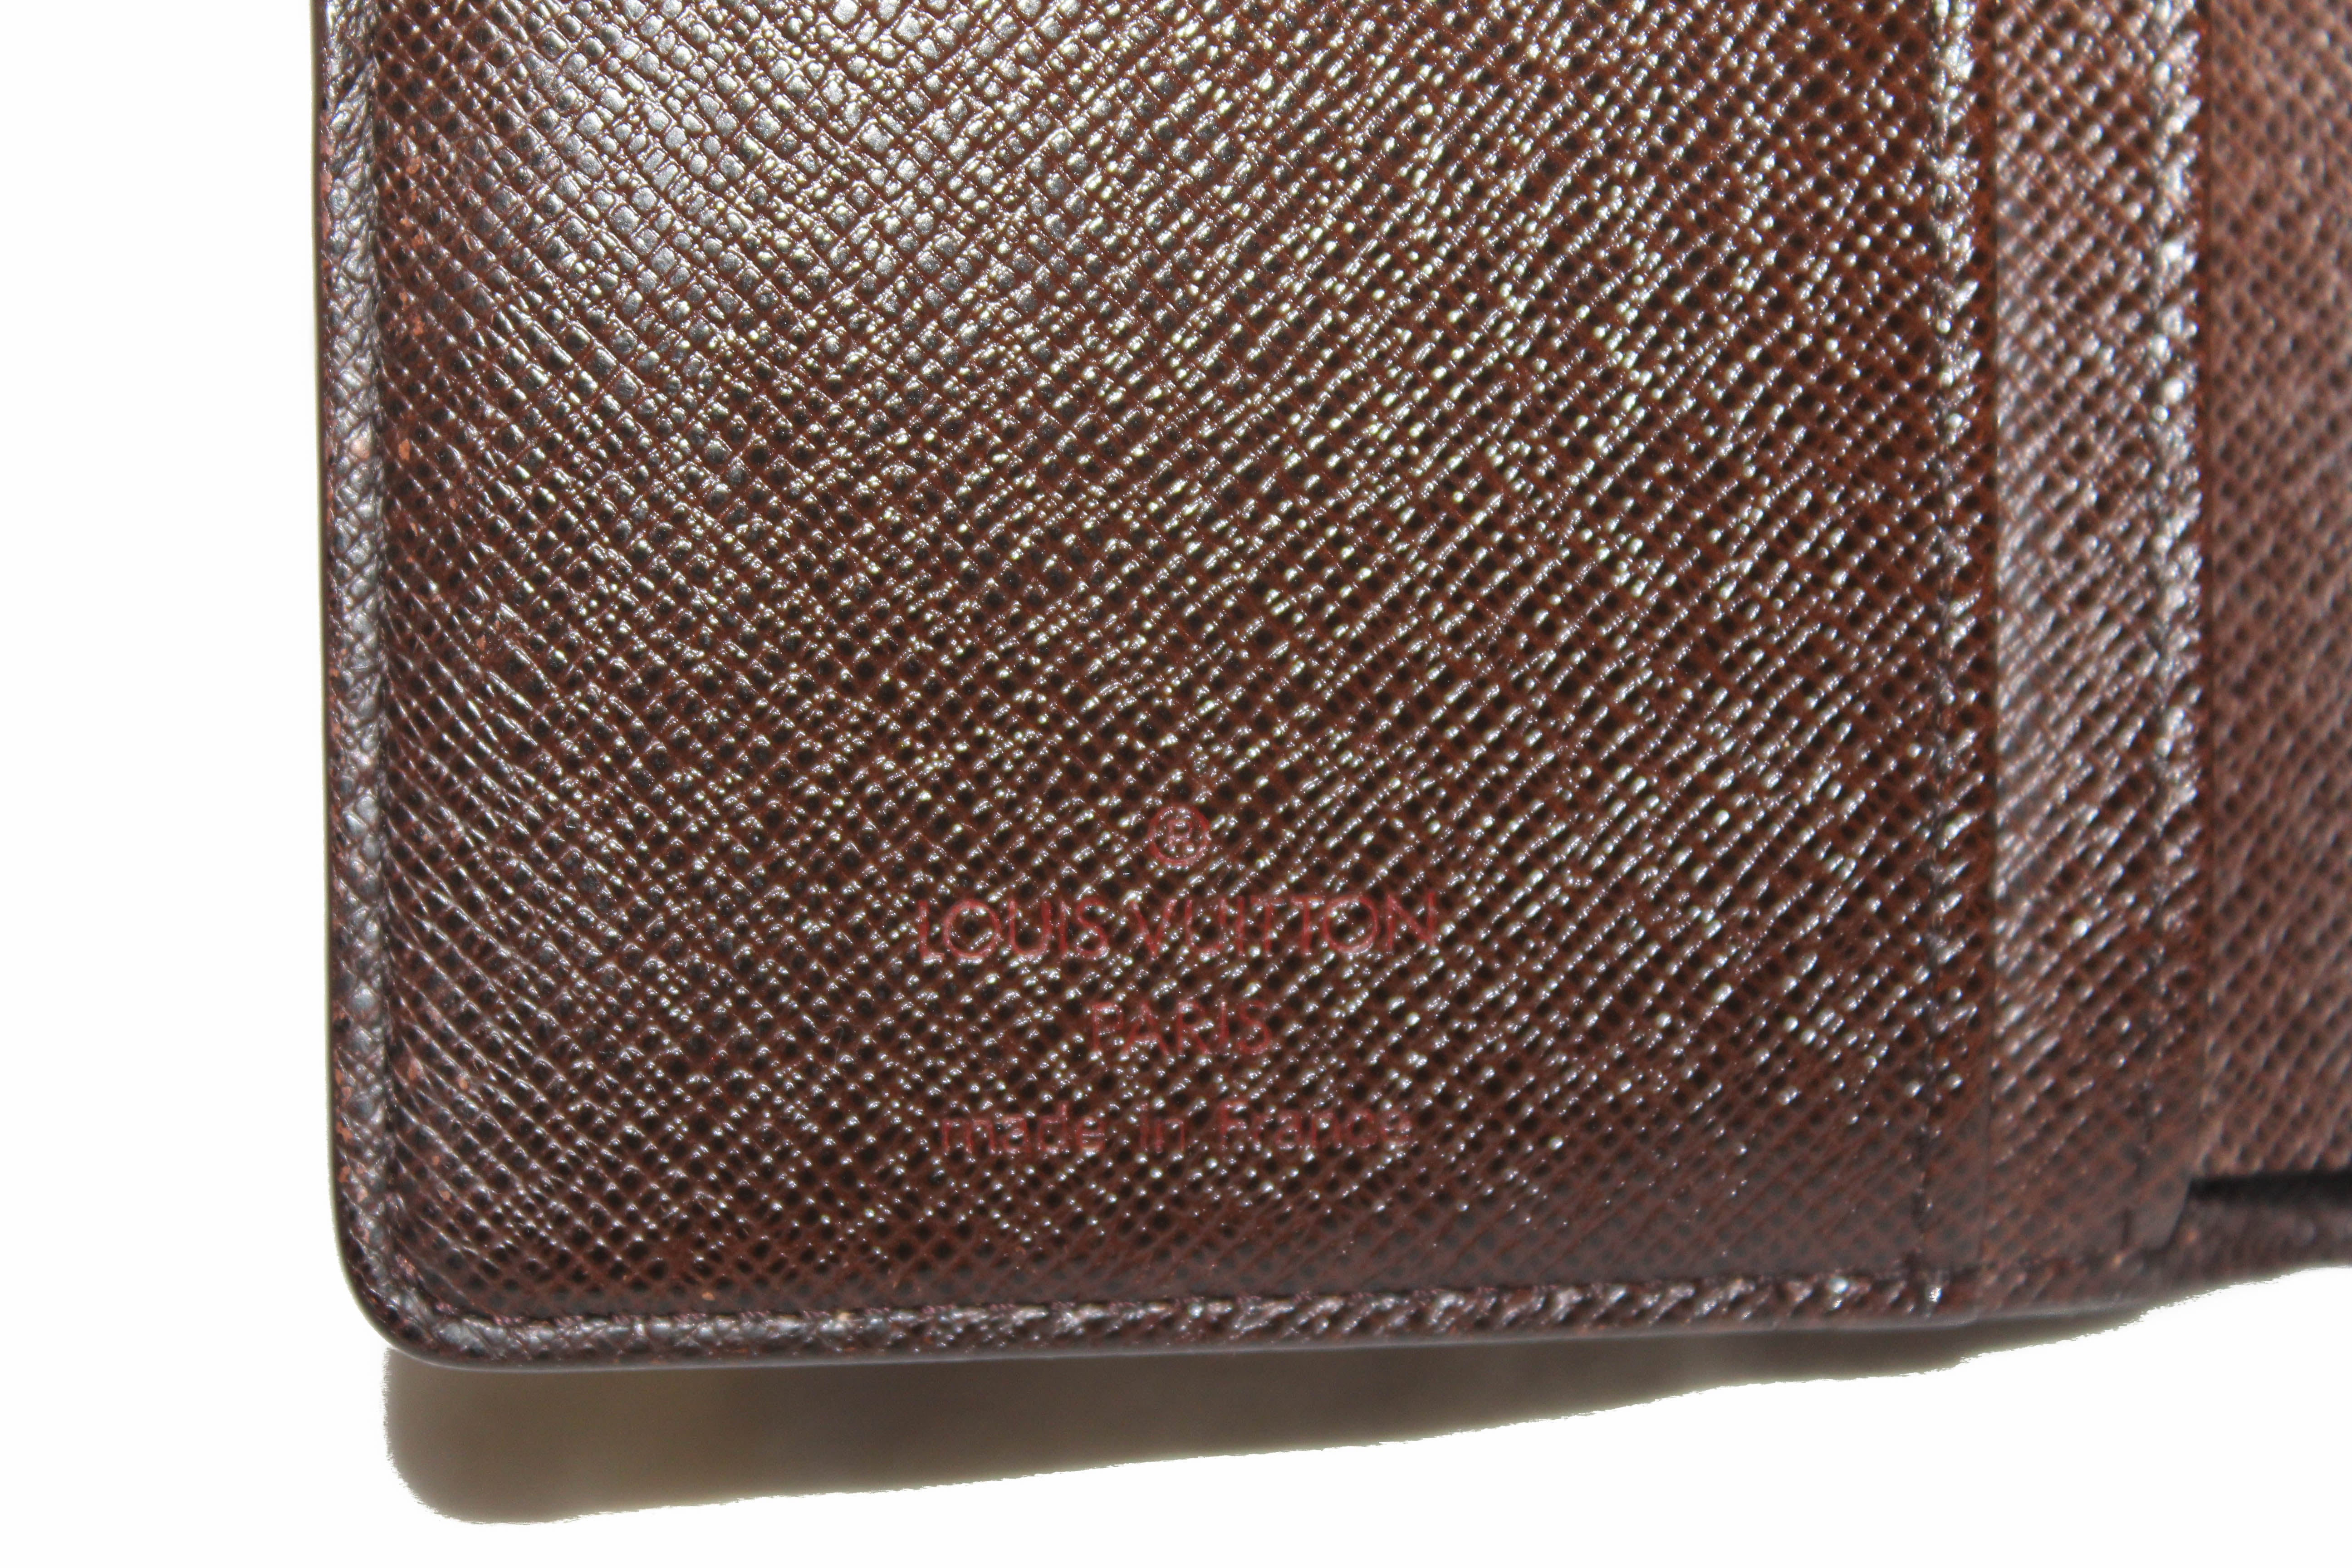 Authentic Louis Vuitton Damier Ebene French Purse Wallet